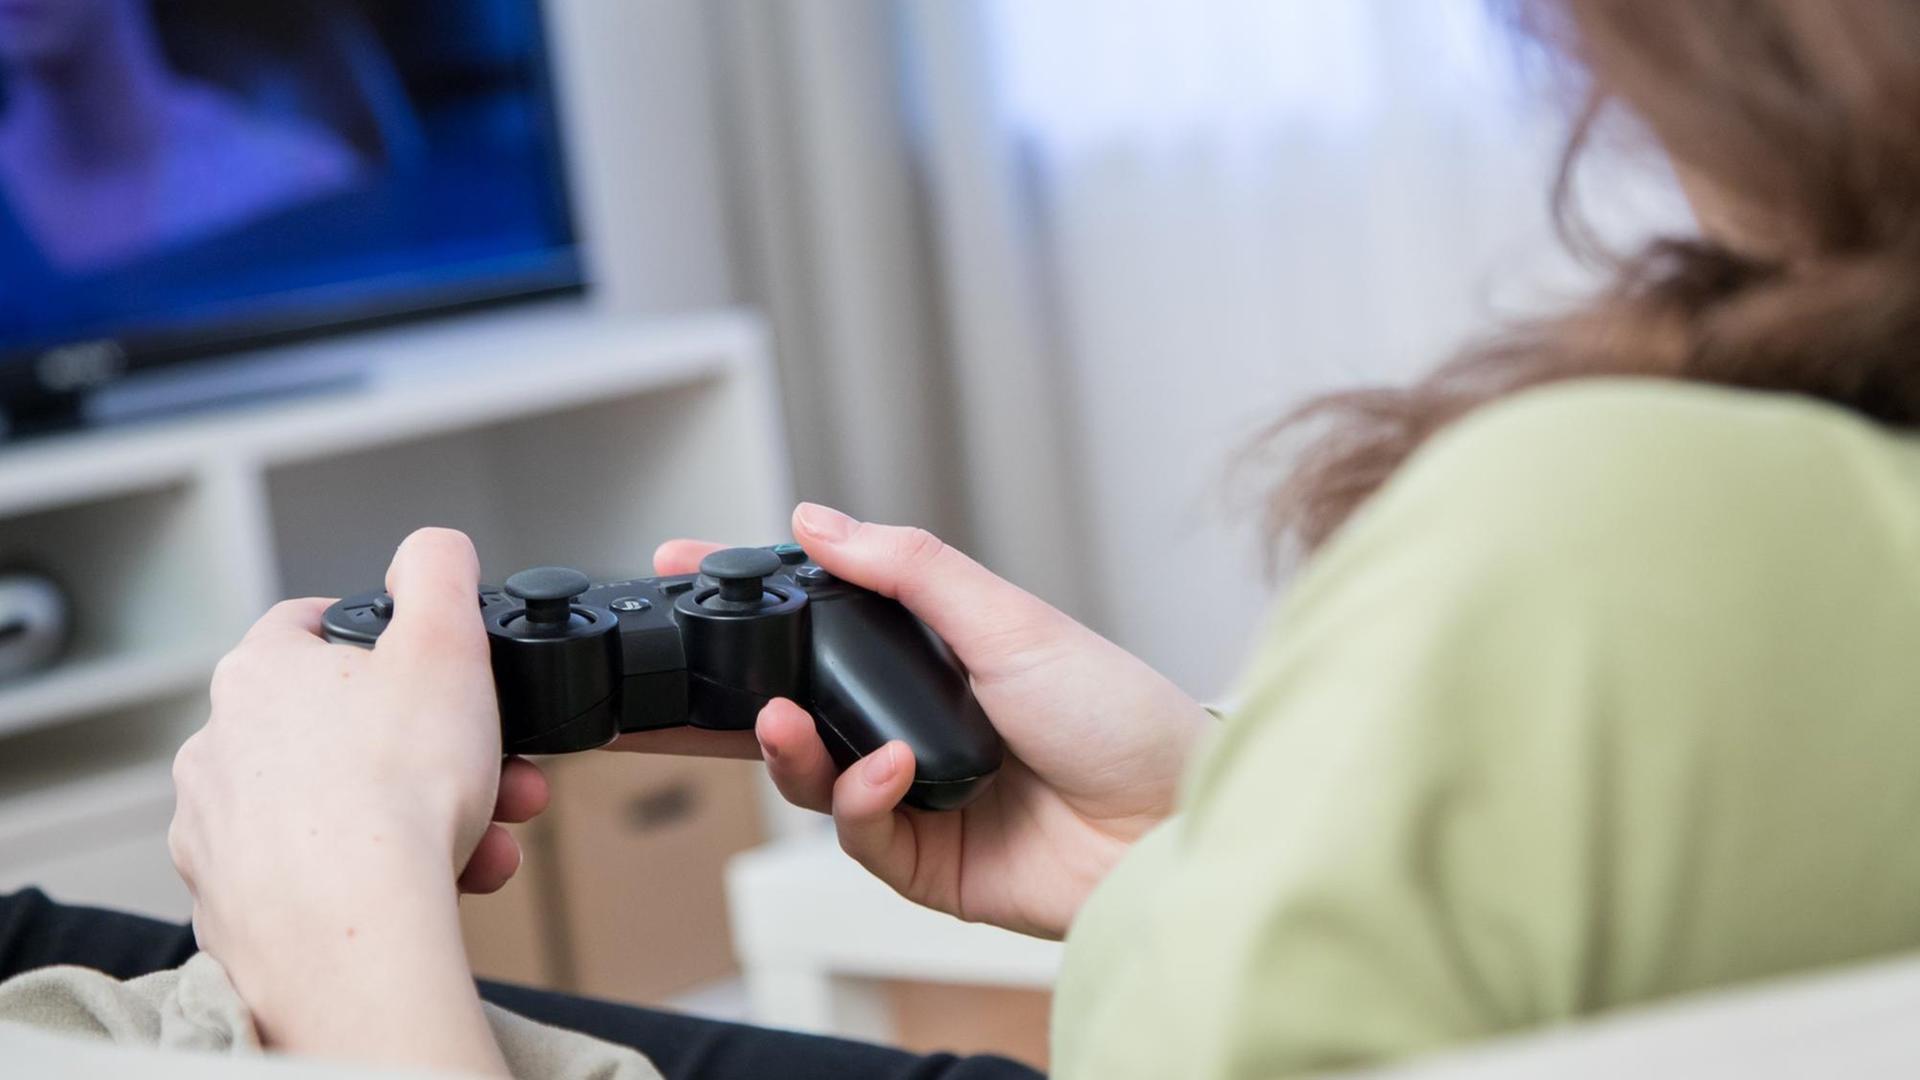 Eine junge Frau sitzt in einer Wohnung und spielt Videospiele eber das Fernsehgeraet. (Symbolbild)